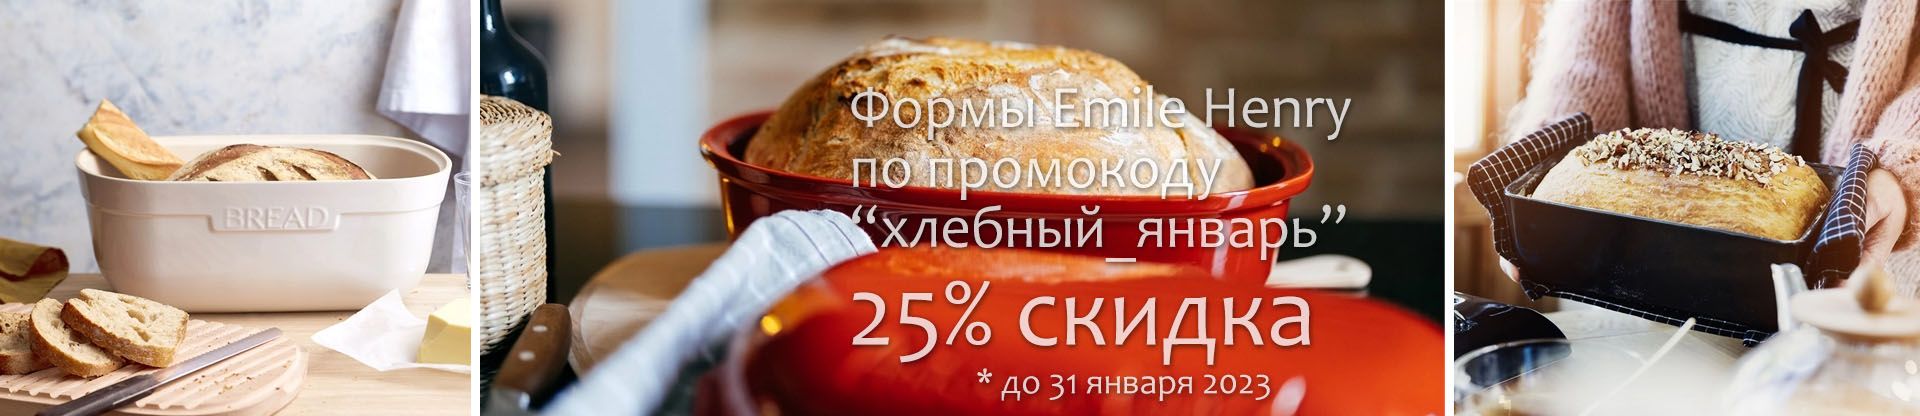 Скидка 25% на хлебные формы Emile Henry